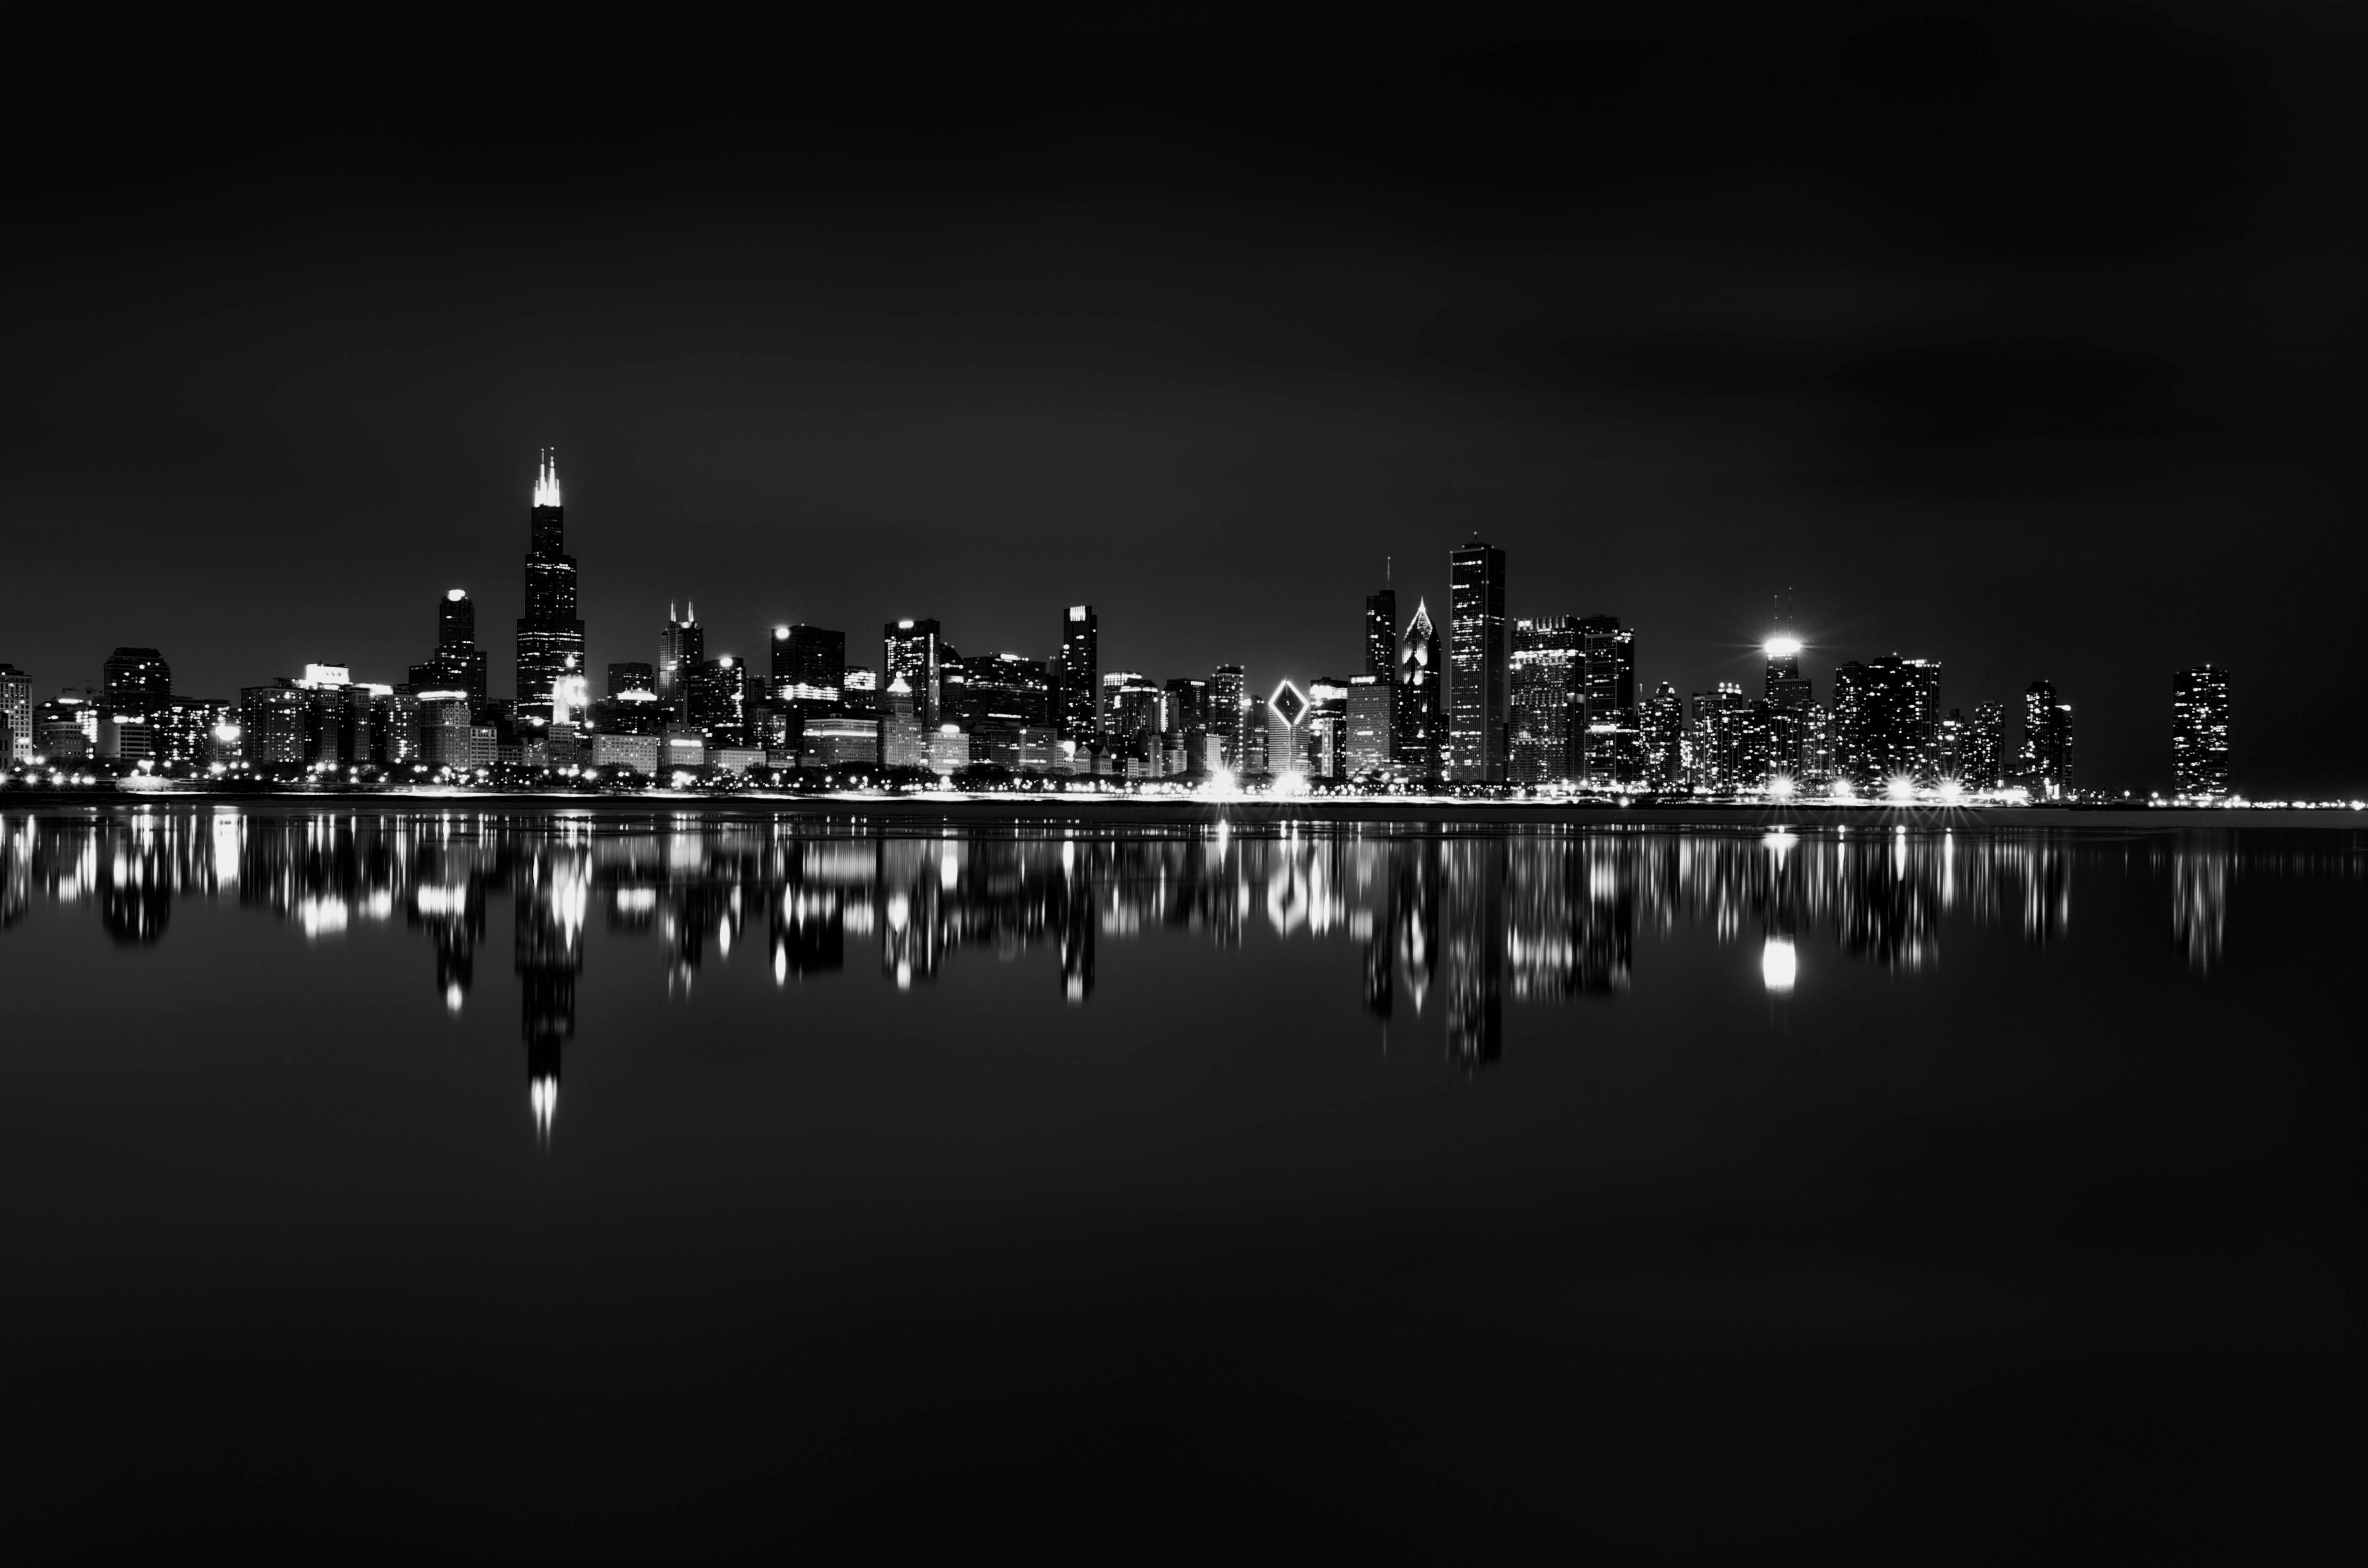 Картинка город черно белая. Ночной город черно белый. Панорама ночного города. Город в черно белом цвете. Ночной пейзаж города.